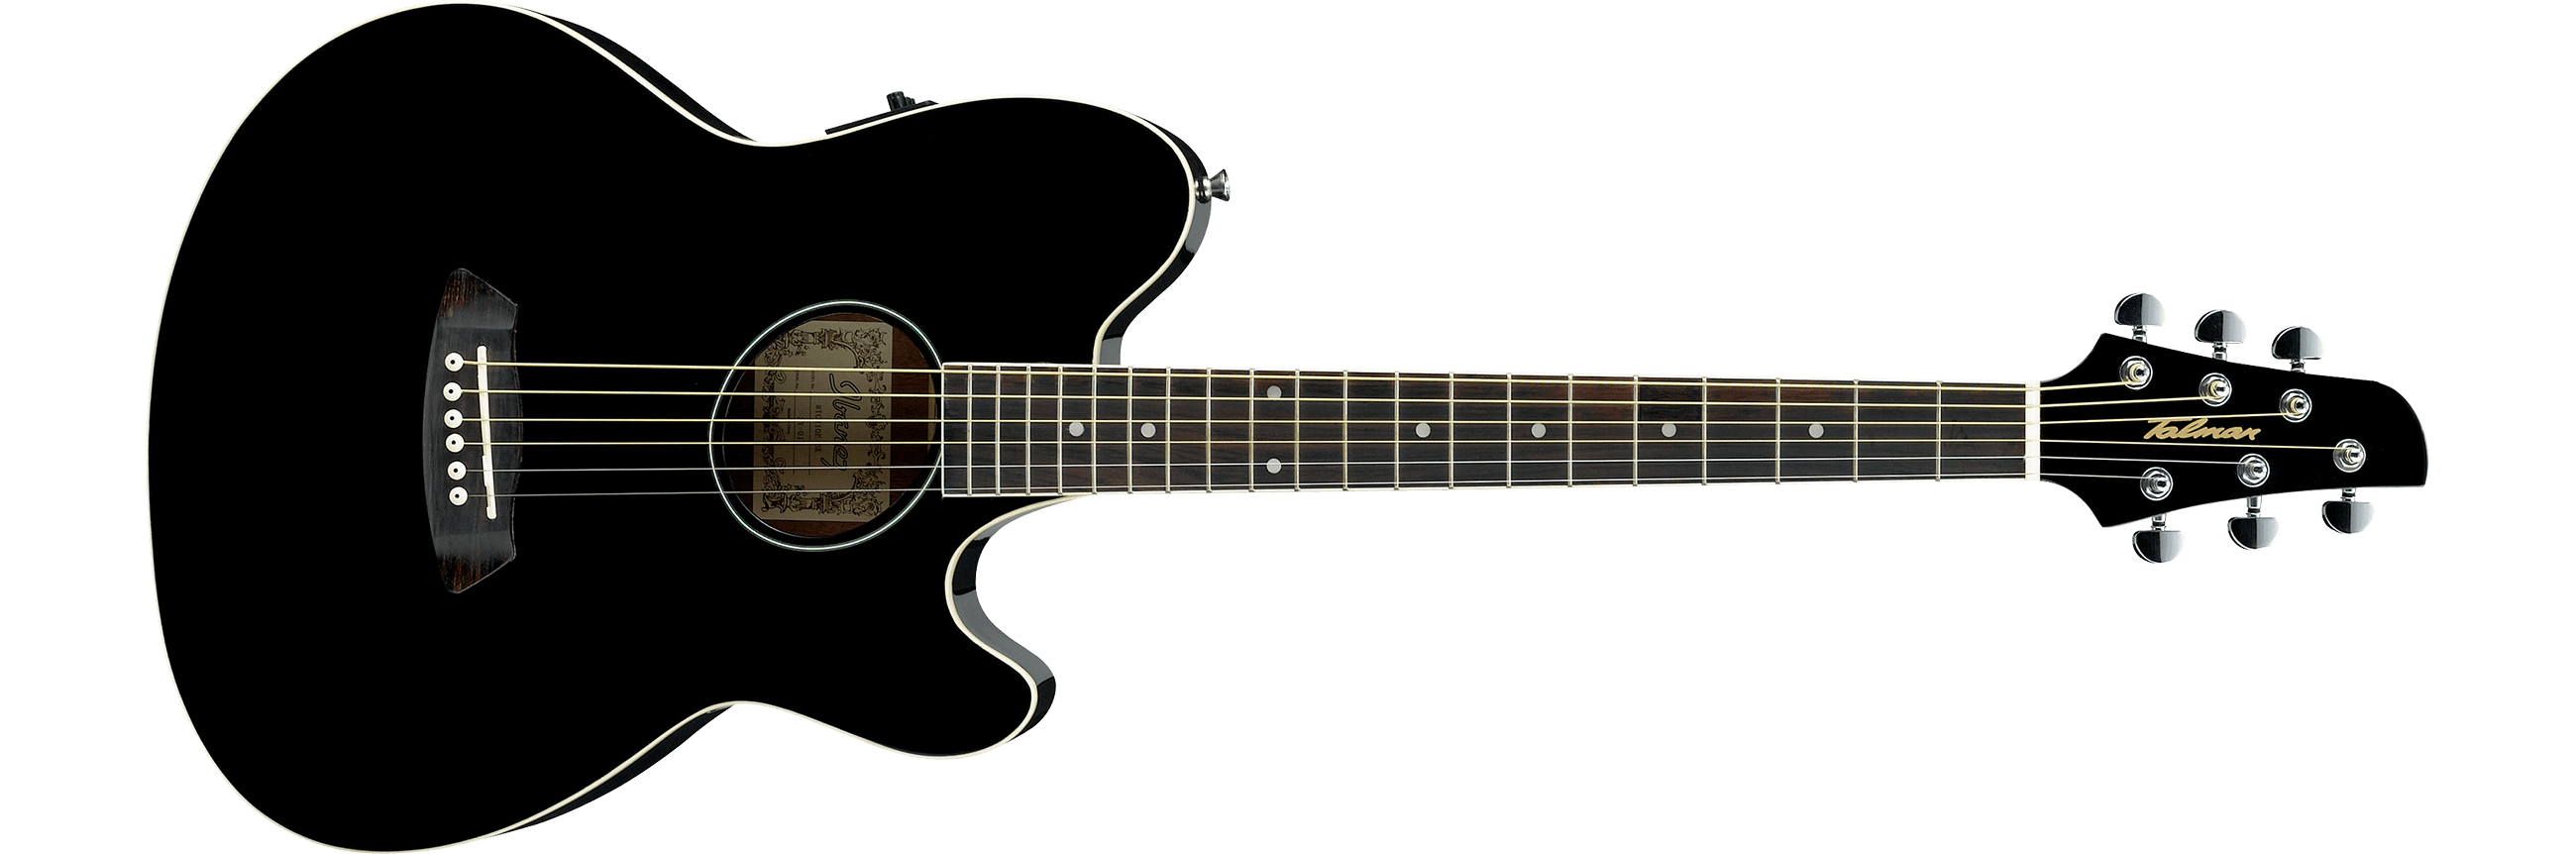 Ibañez - Guitarra Electroacústica Talman, Color: Negro Mod.TCY10E-BK_16